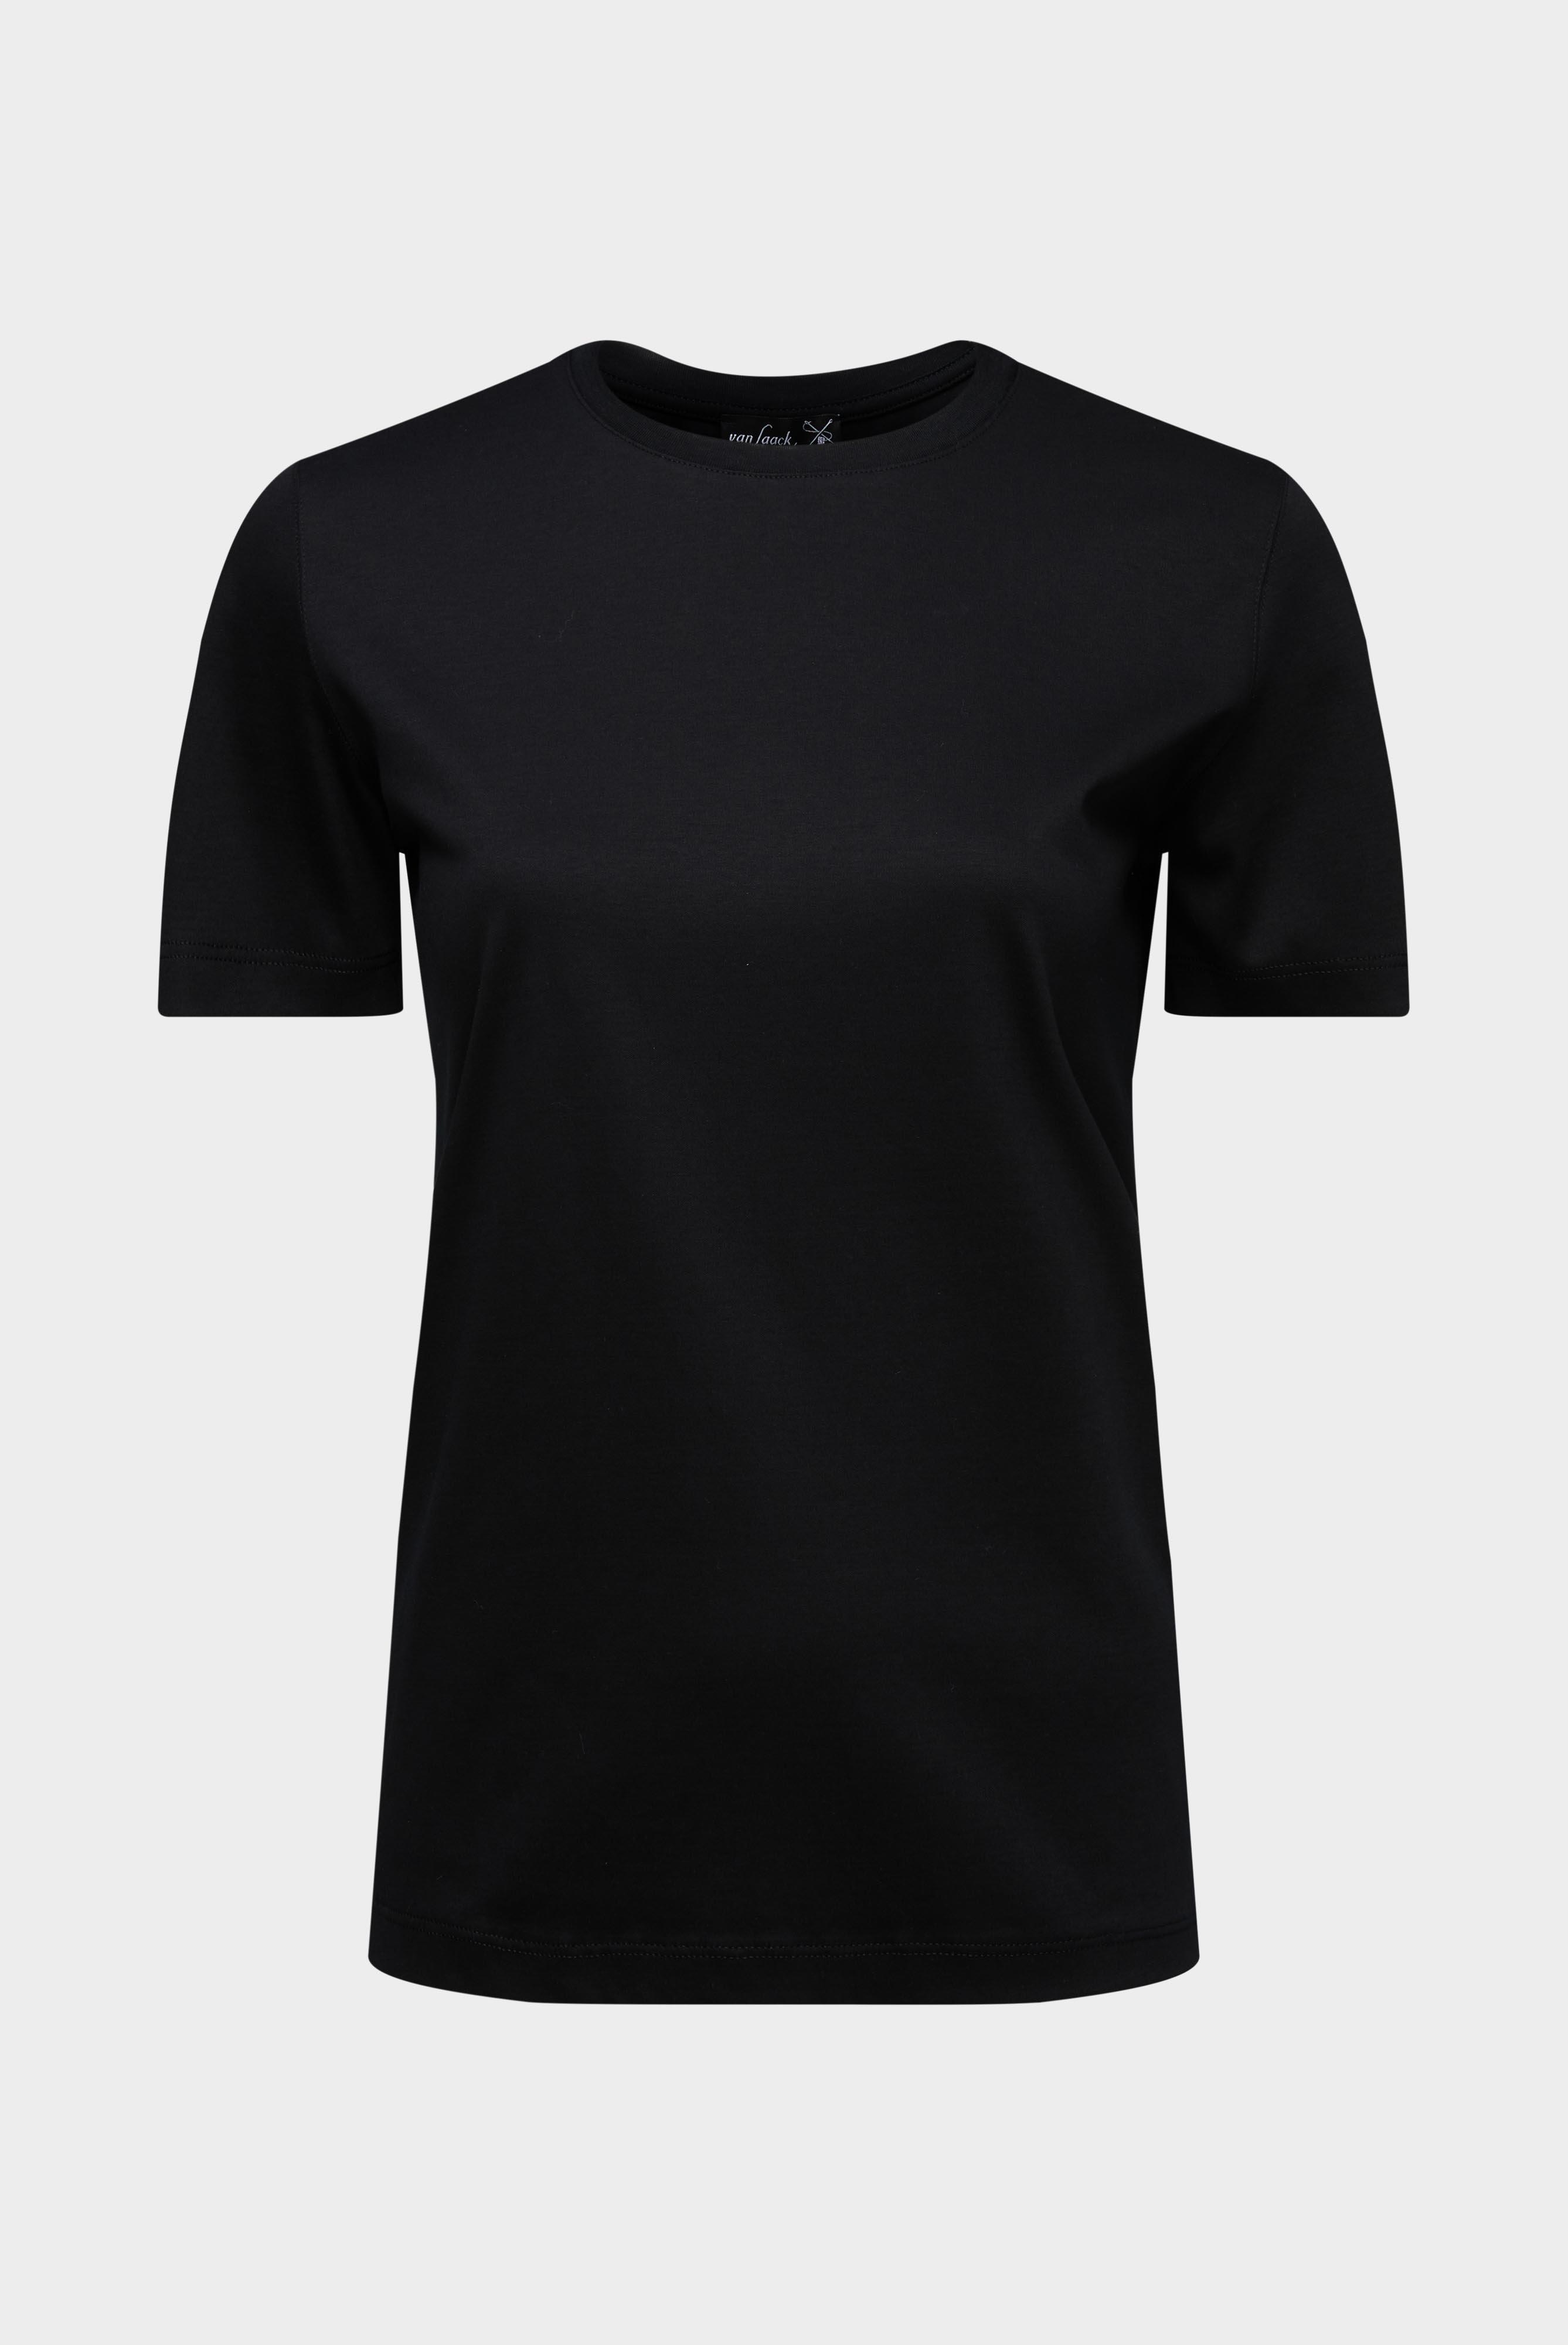 Tops & T-Shirts+Jersey T-Shirt+05.6384.18.180031.099.44